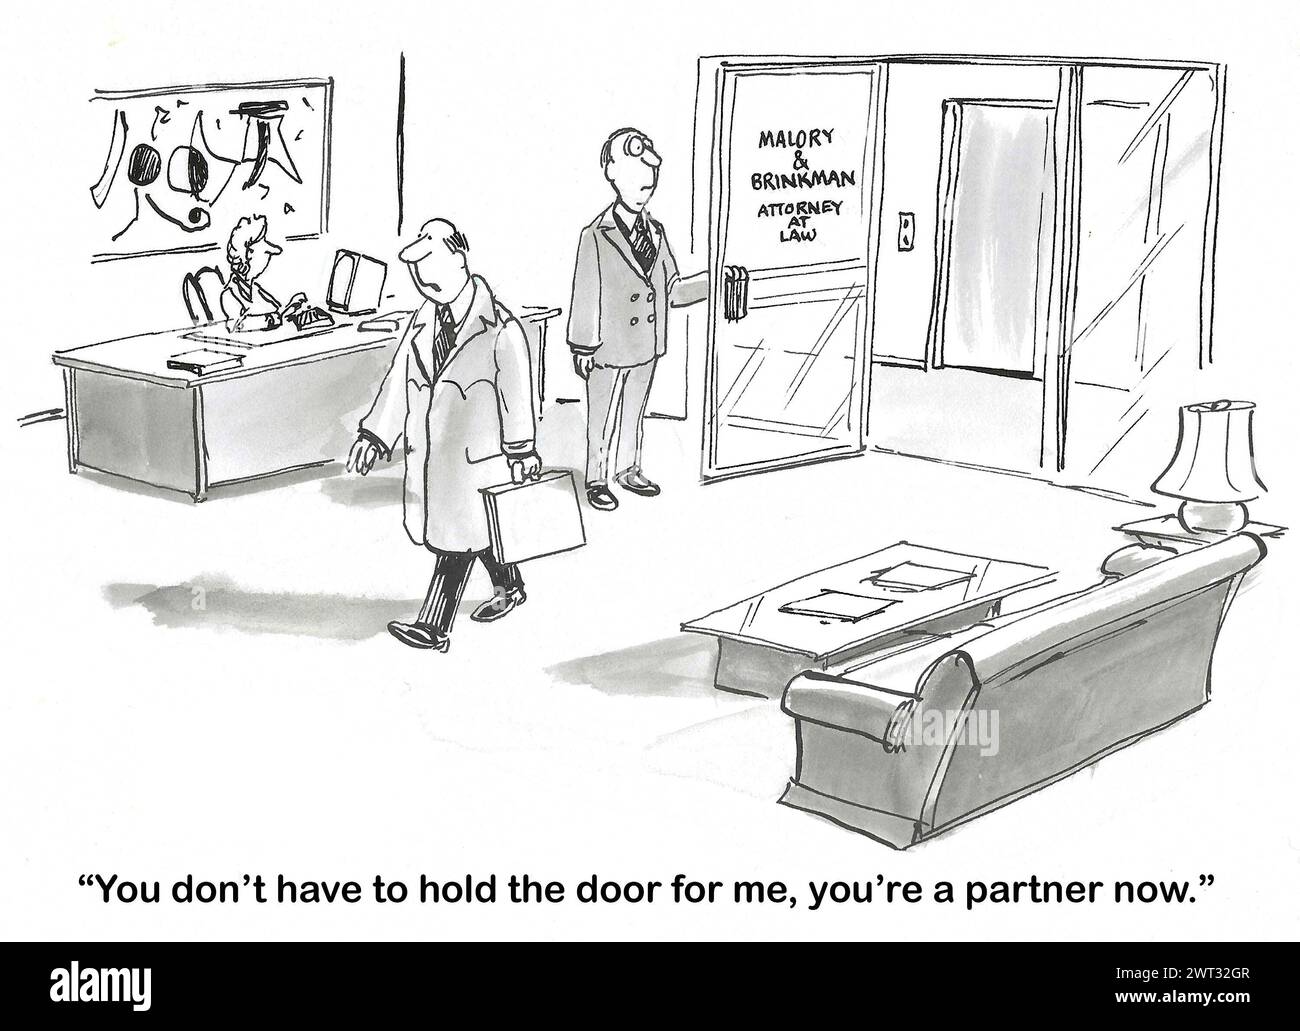 Fumetto BW di un partner legale che tiene la porta per il suo "capo". Il capo gli ricorda che è un partner, quindi non ha bisogno di tenere la porta. Foto Stock